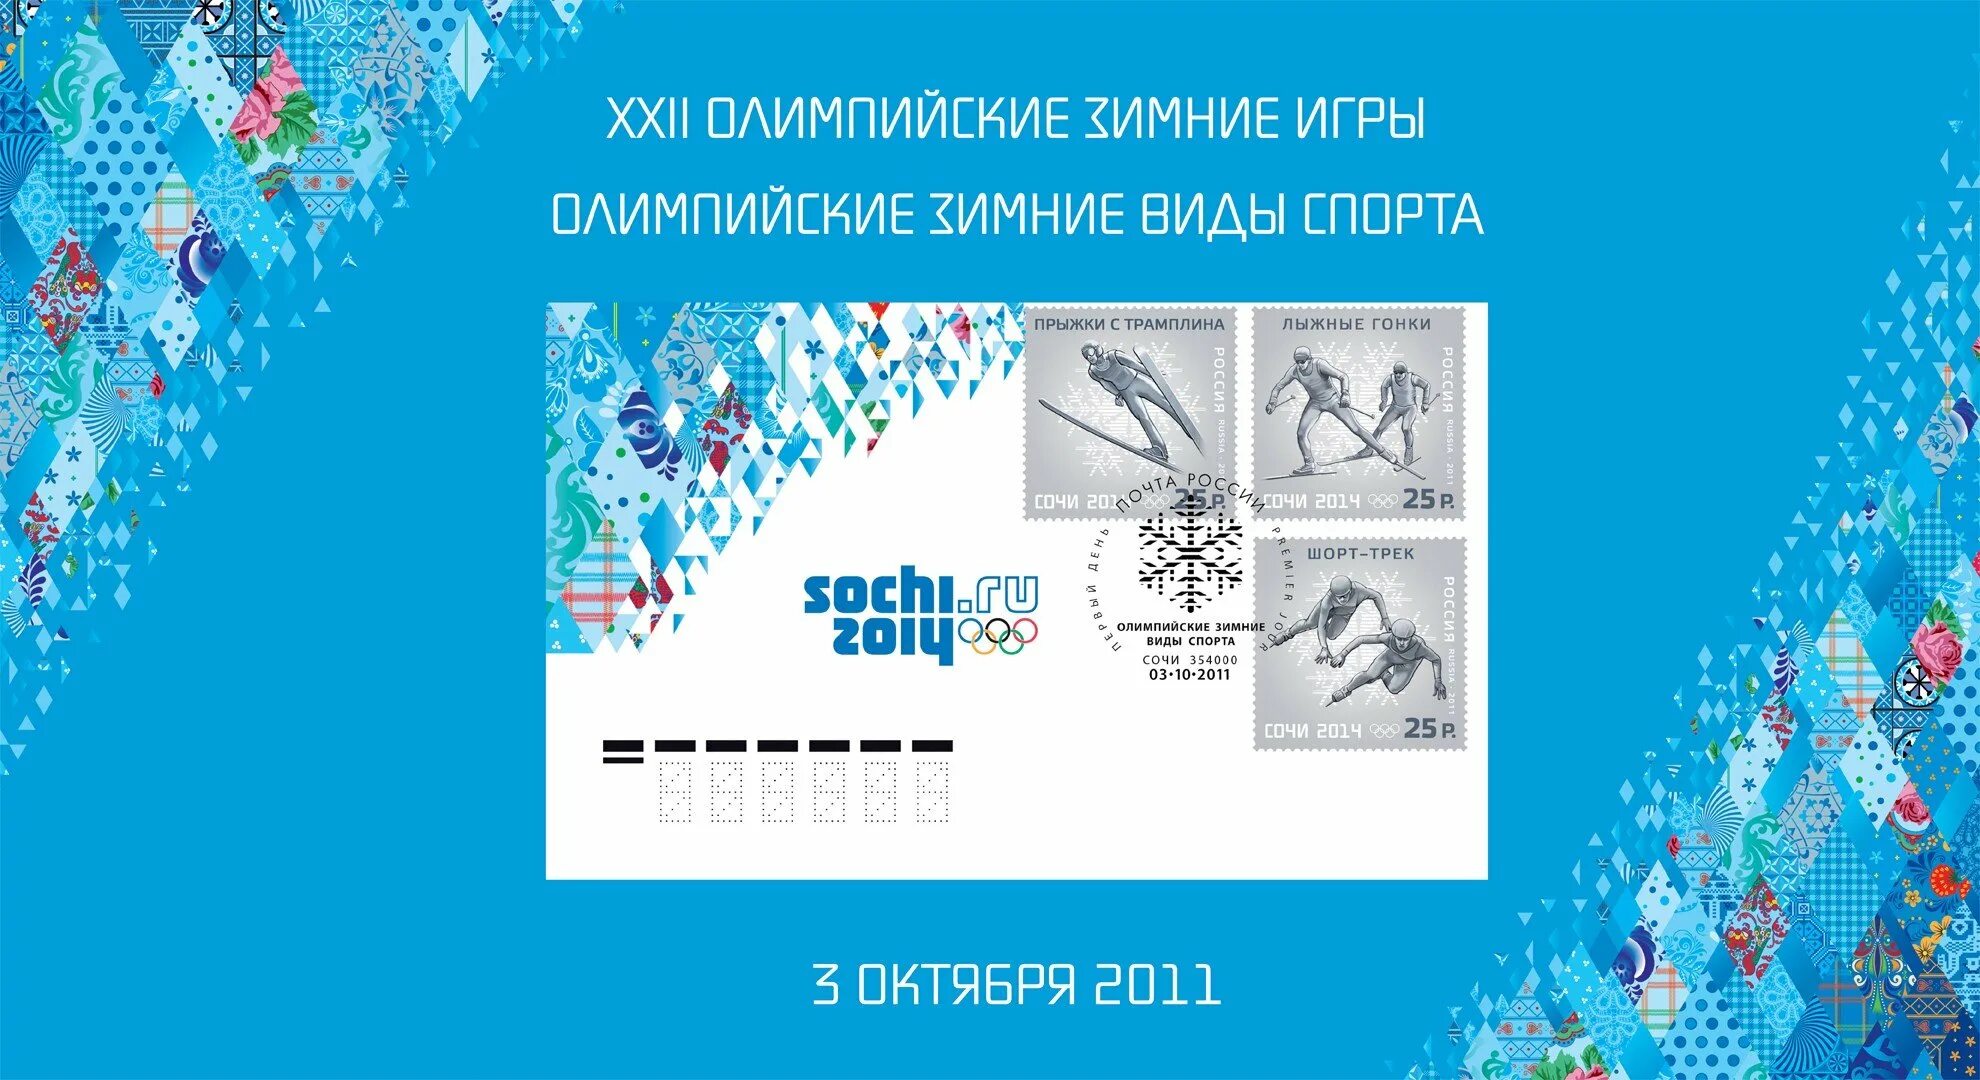 Дизайн Олимпийских игр в Сочи-2014. Орнамент Сочи 2014.